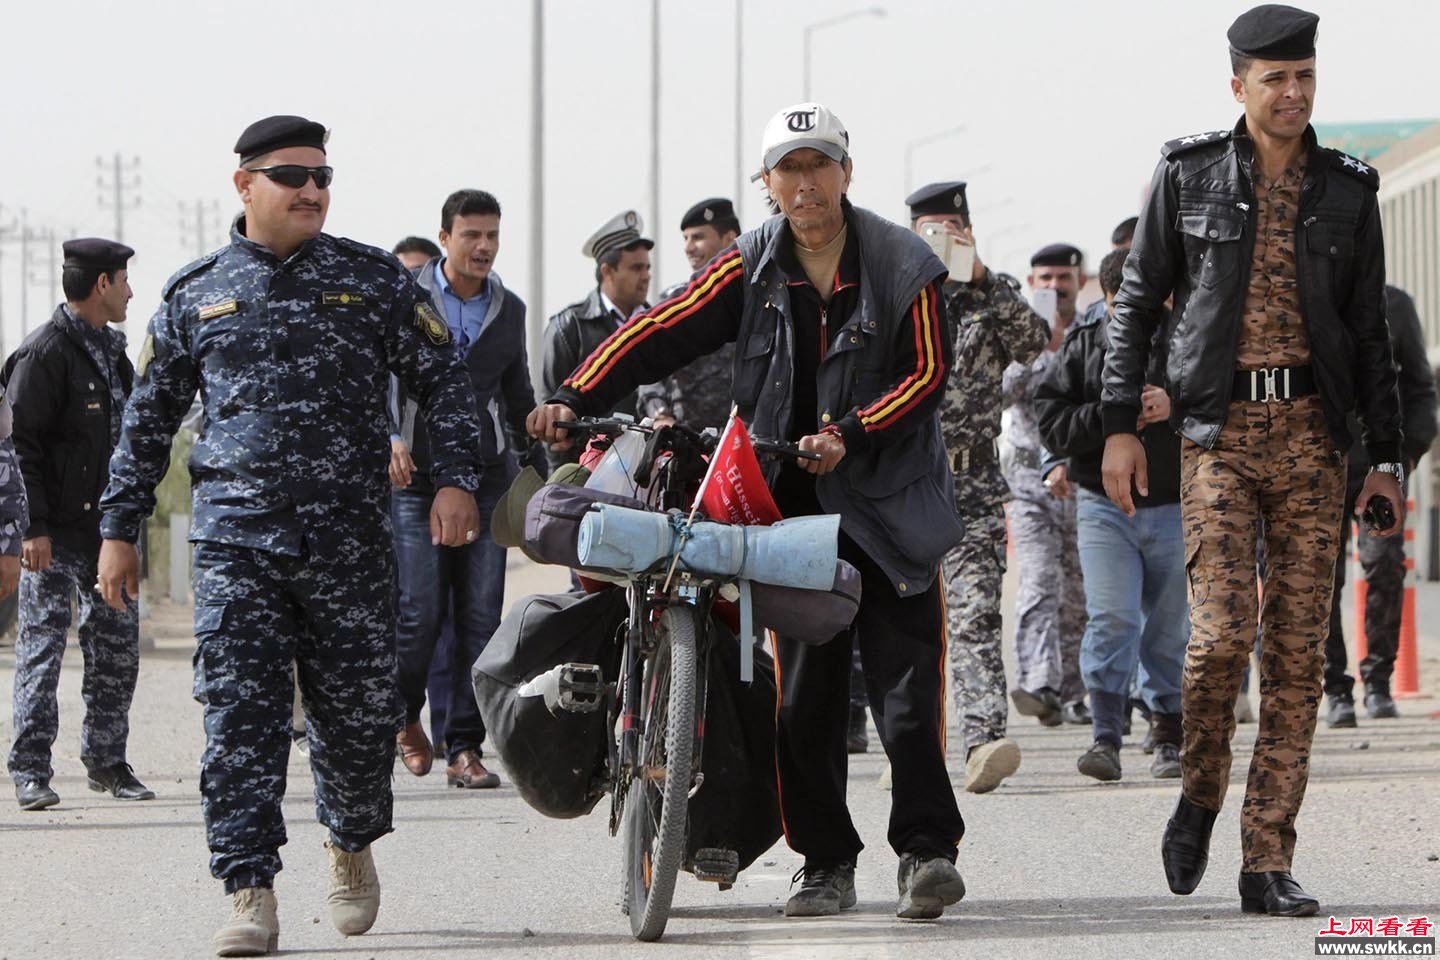 中国男子骑车环游世界到伊拉克军警“护送”